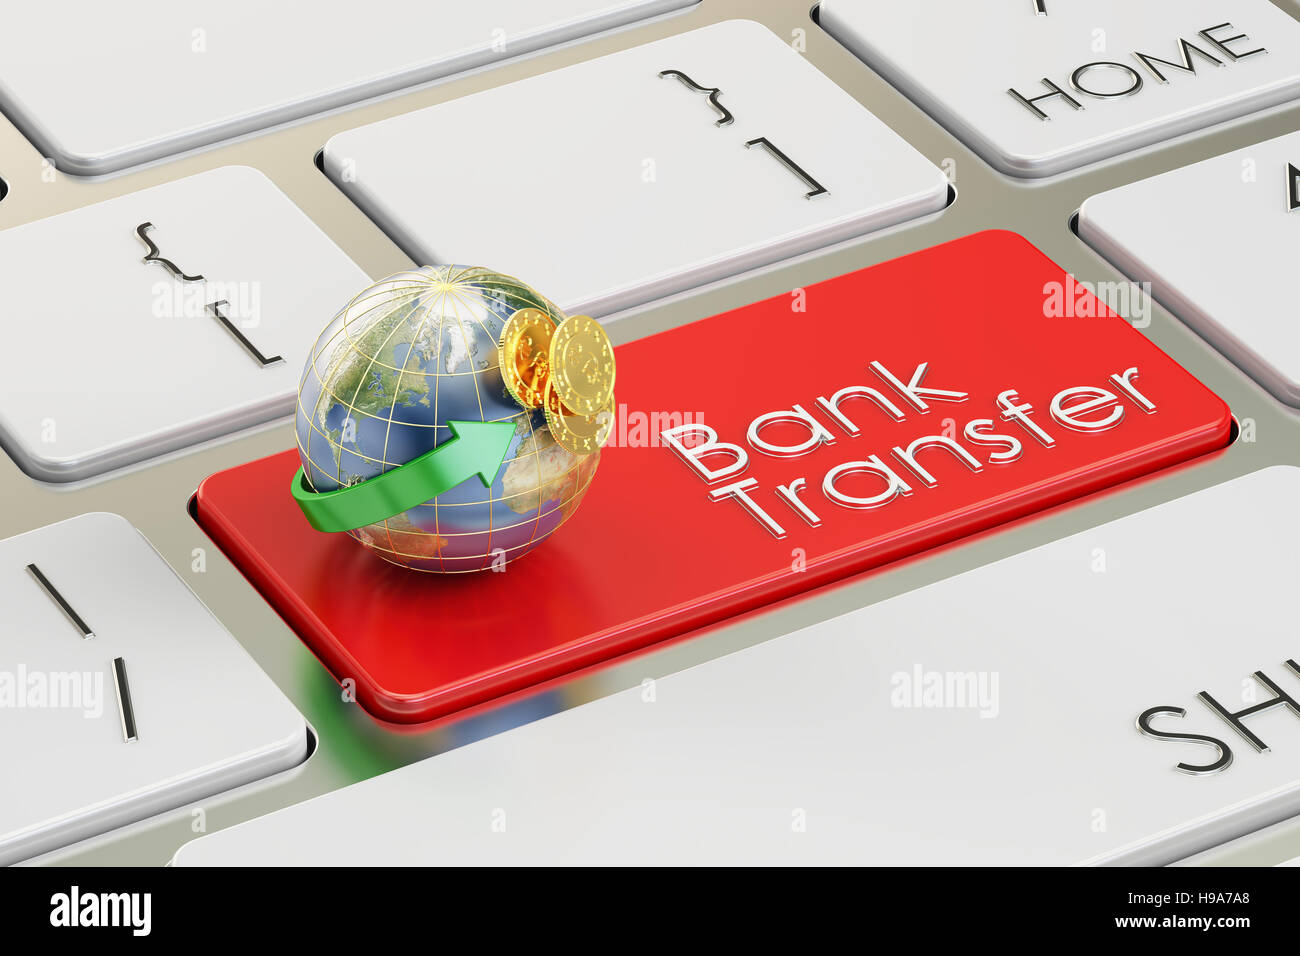 Virement bancaire sur le bouton clavier concept rouge, rendu 3D, 3D Rendering Banque D'Images